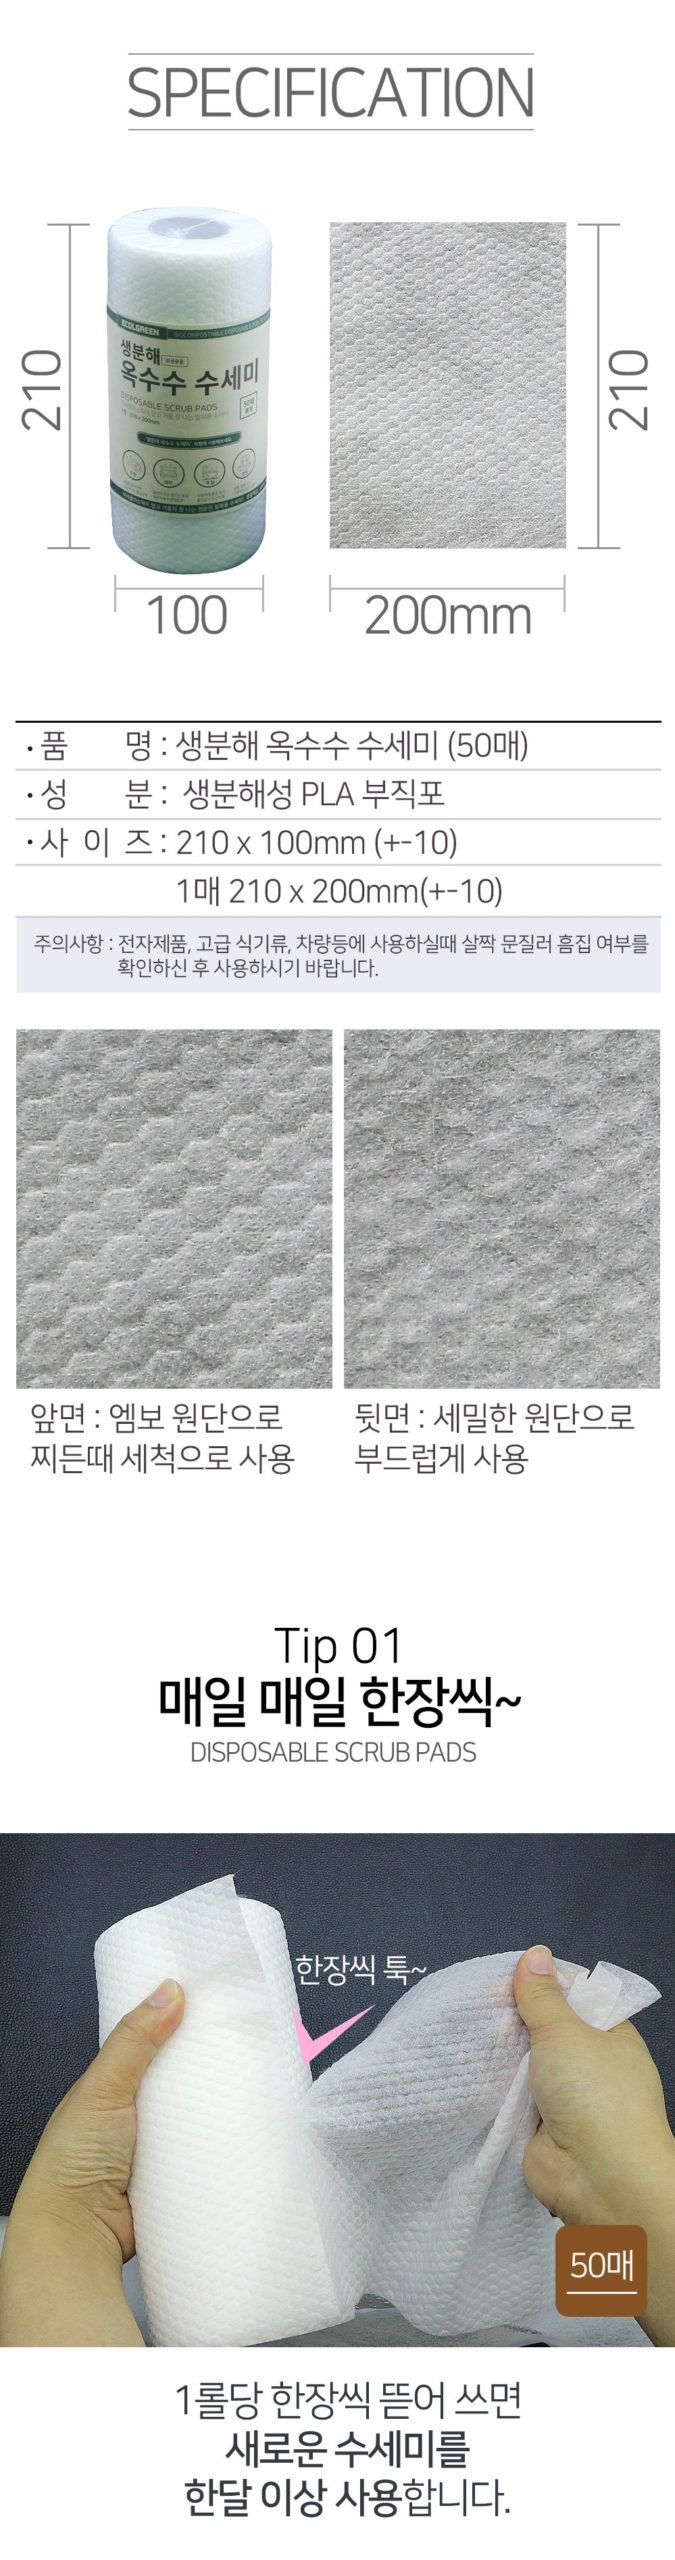 韓國食品-[Ecolgreen] Disposable Scrub Pads 50pcs